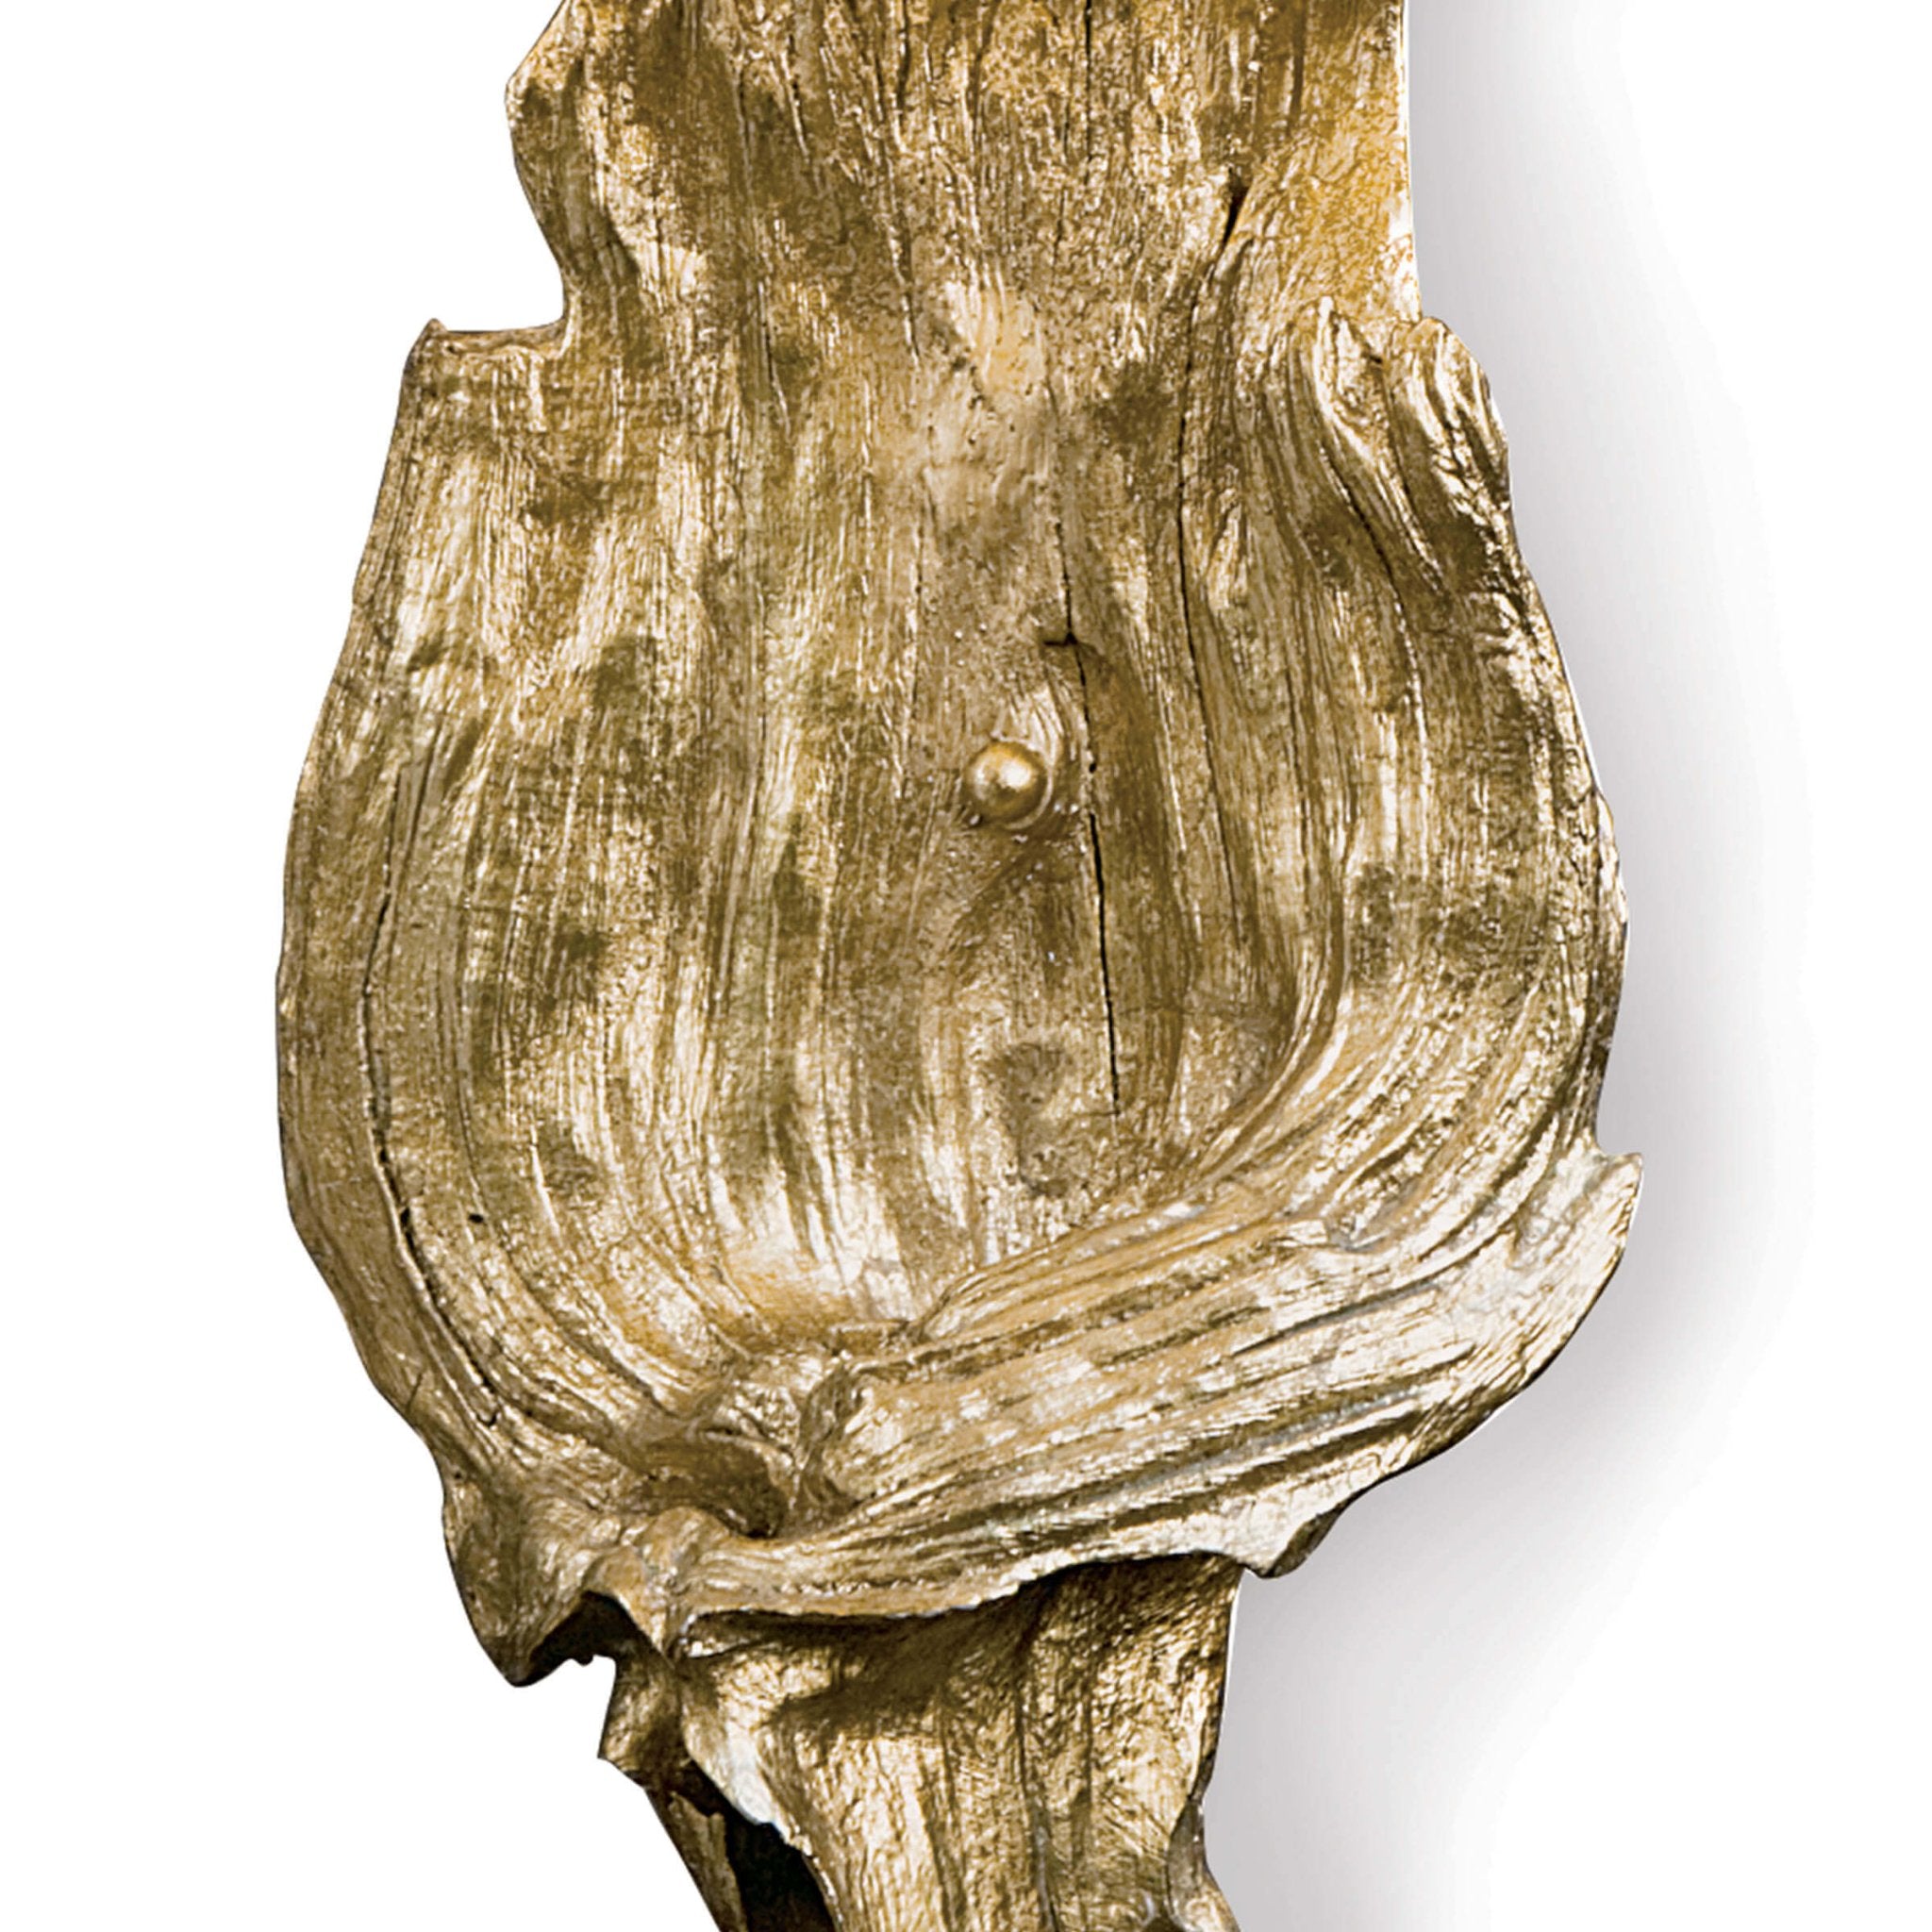 Driftwood Sconce - Antique Gold Leaf - - Decor - Tipplergoods